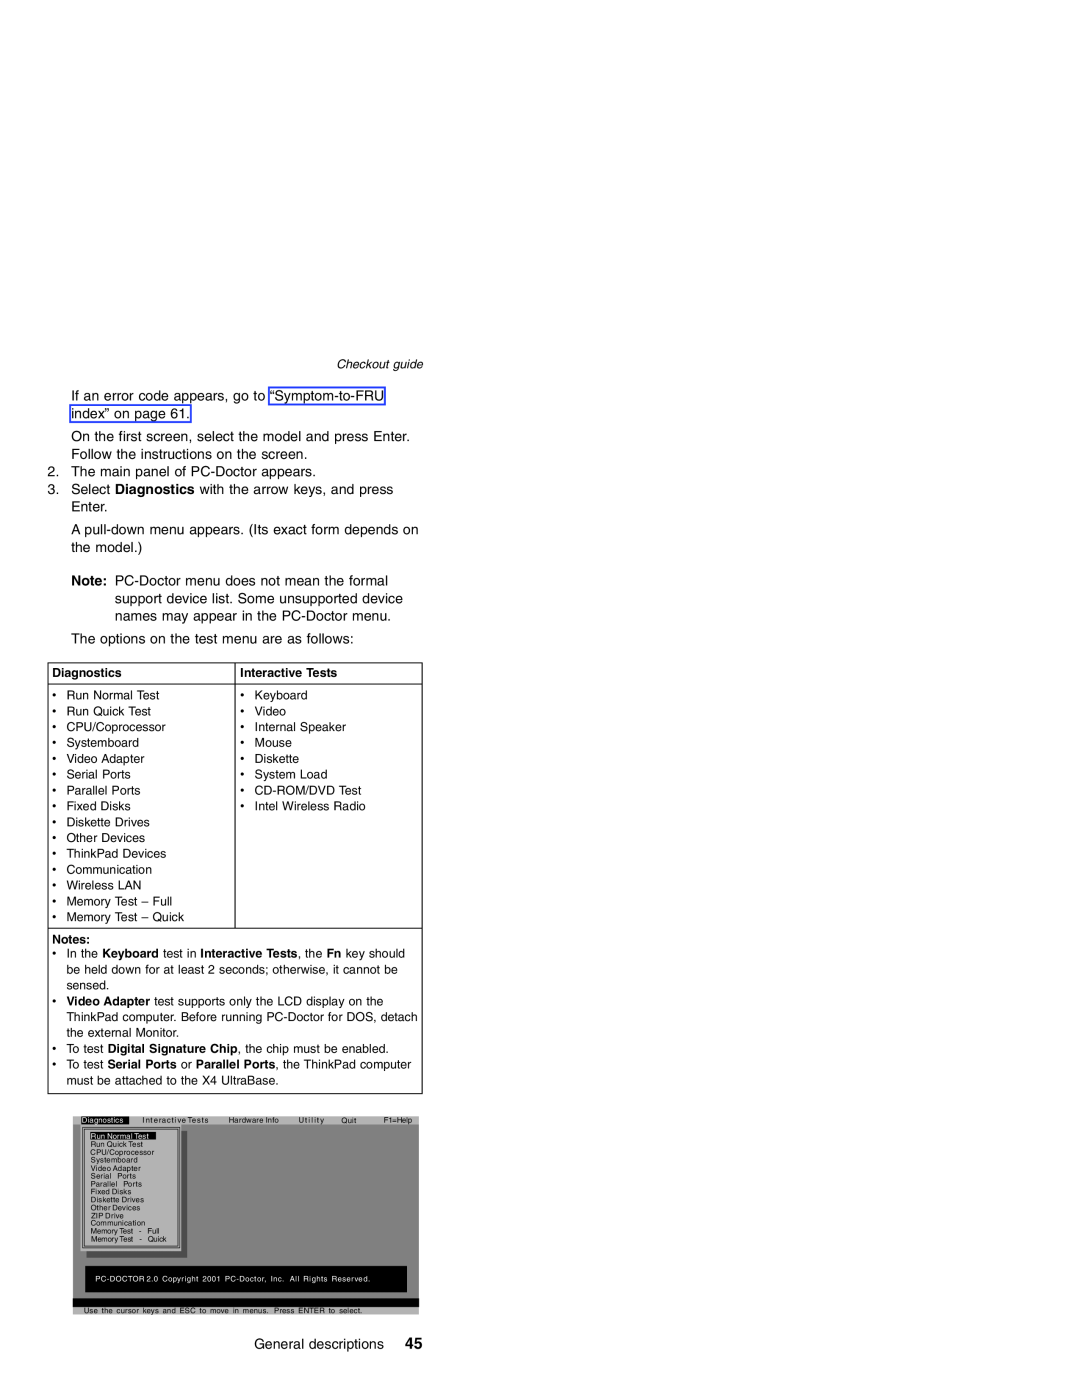 Lenovo MT 2369 manual Diagnostics, Interactive Tests 